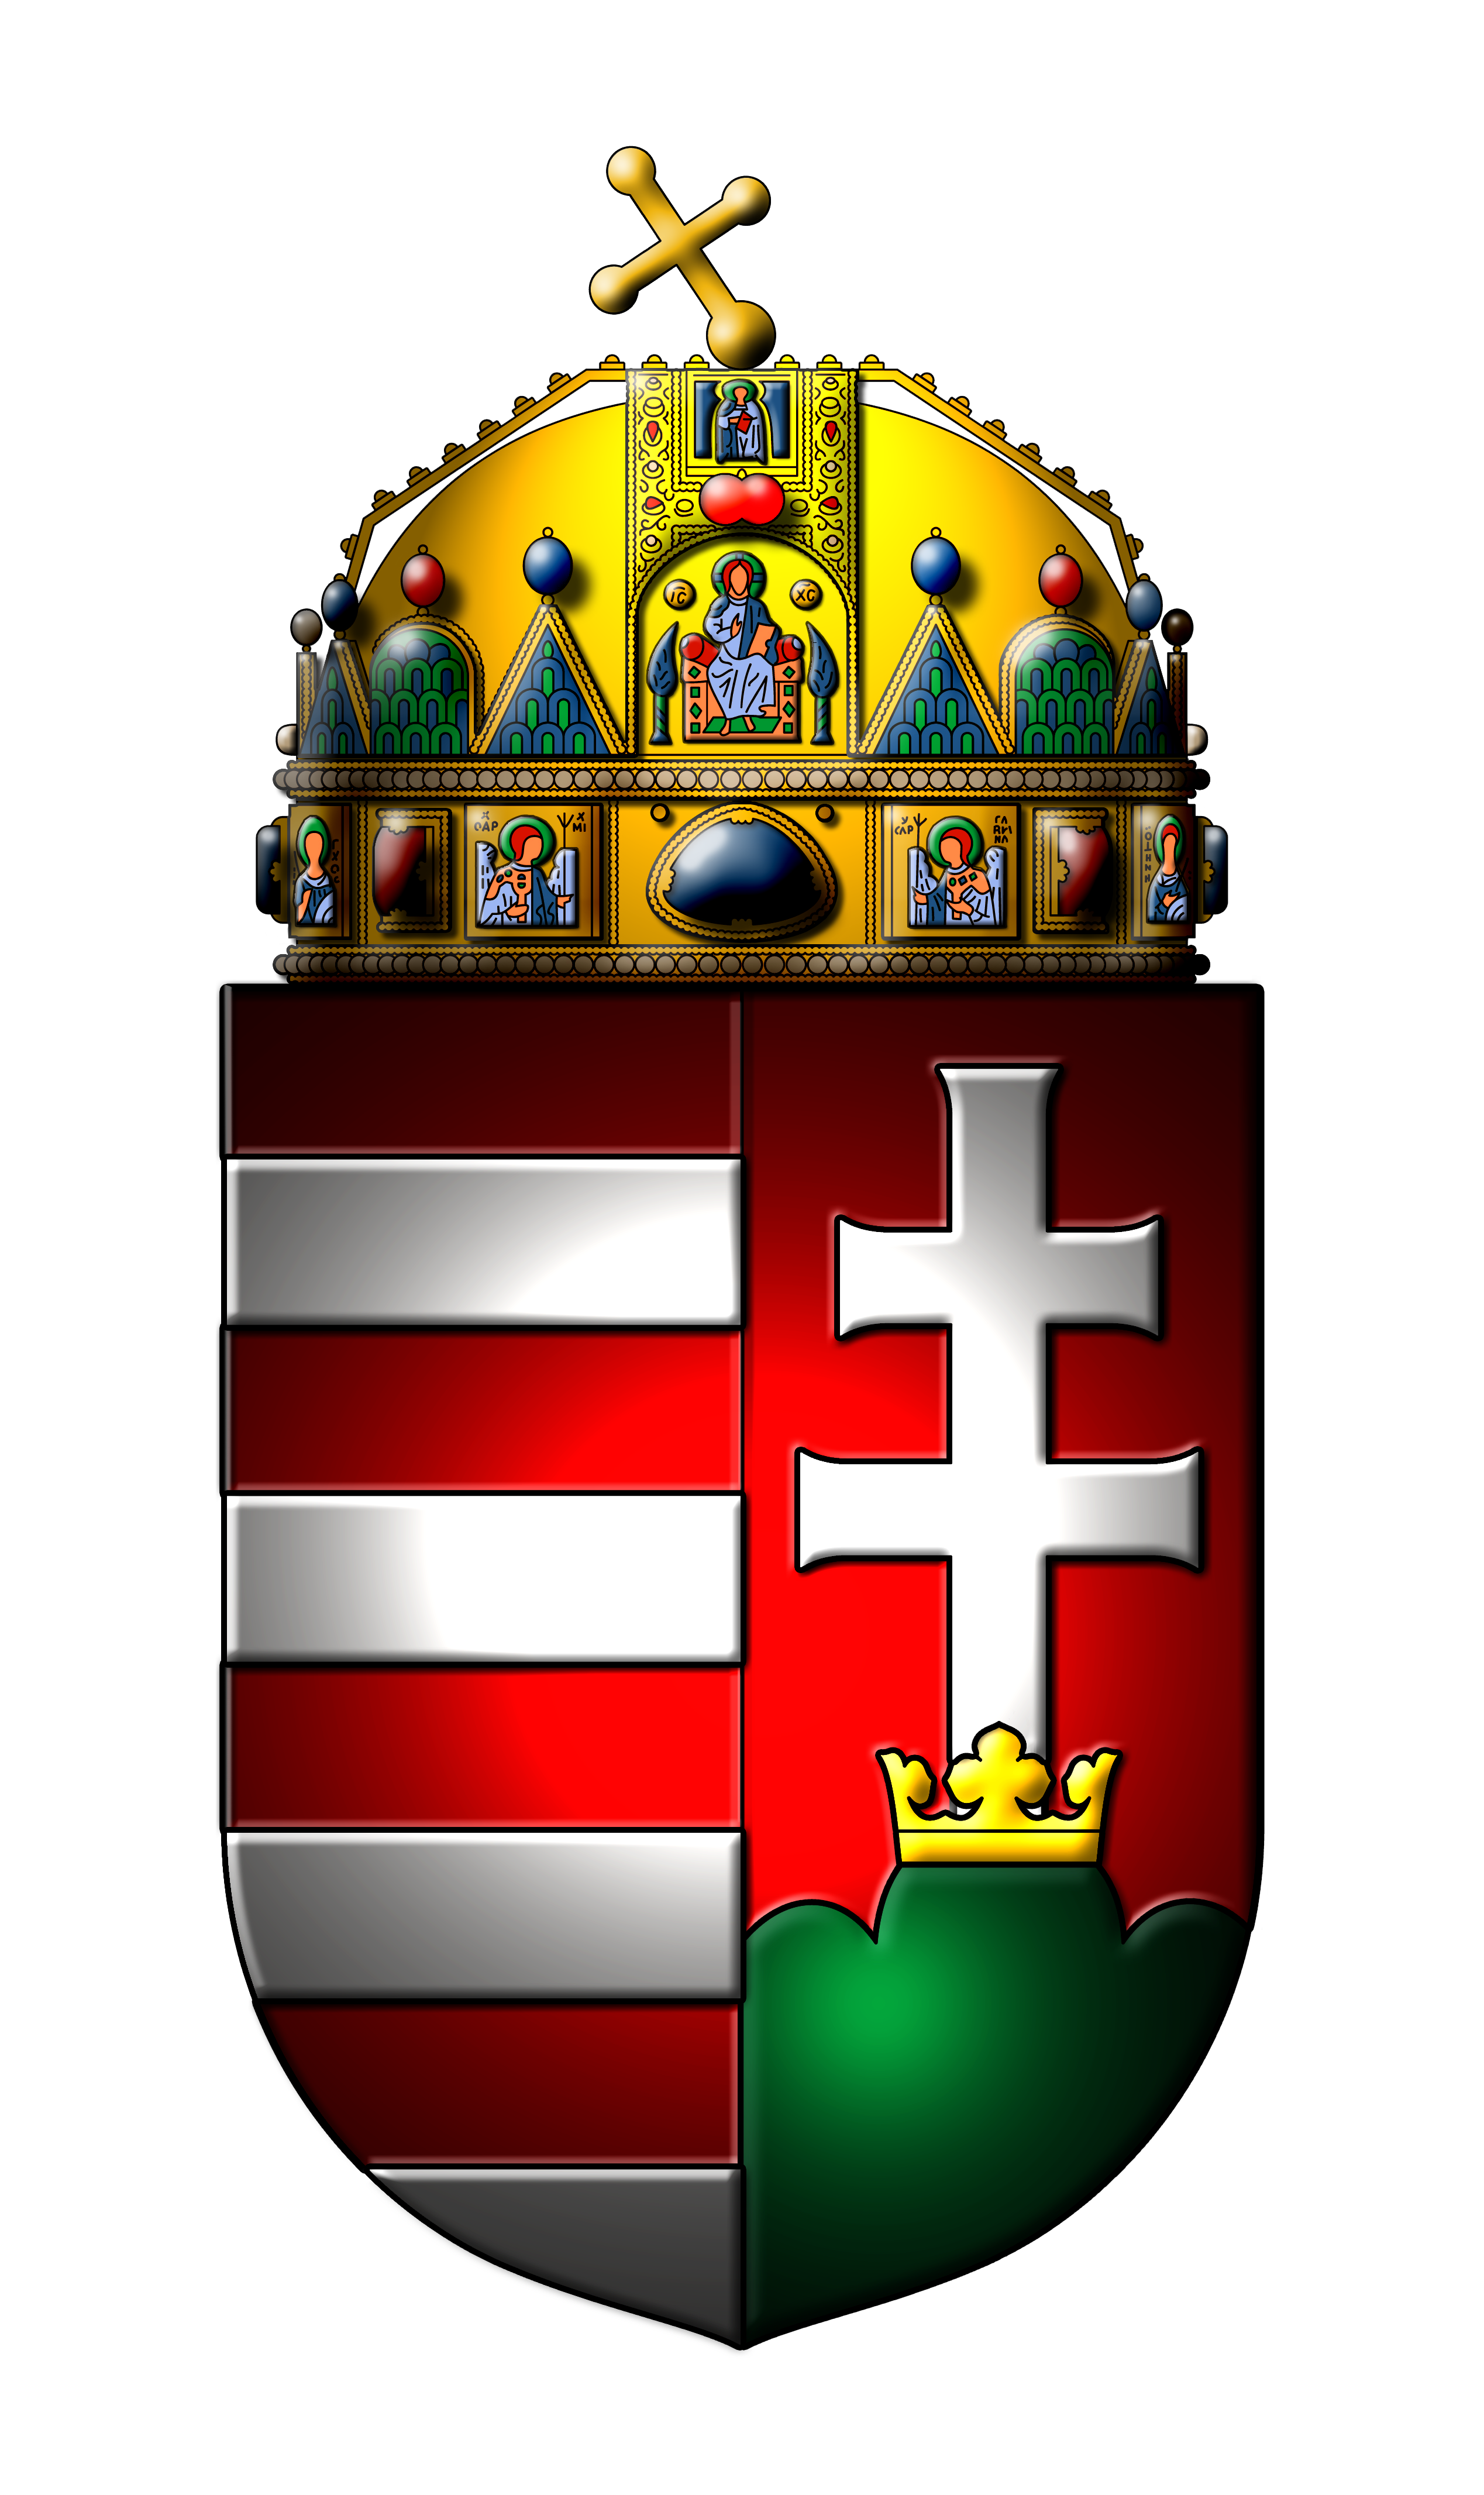 magyar címer